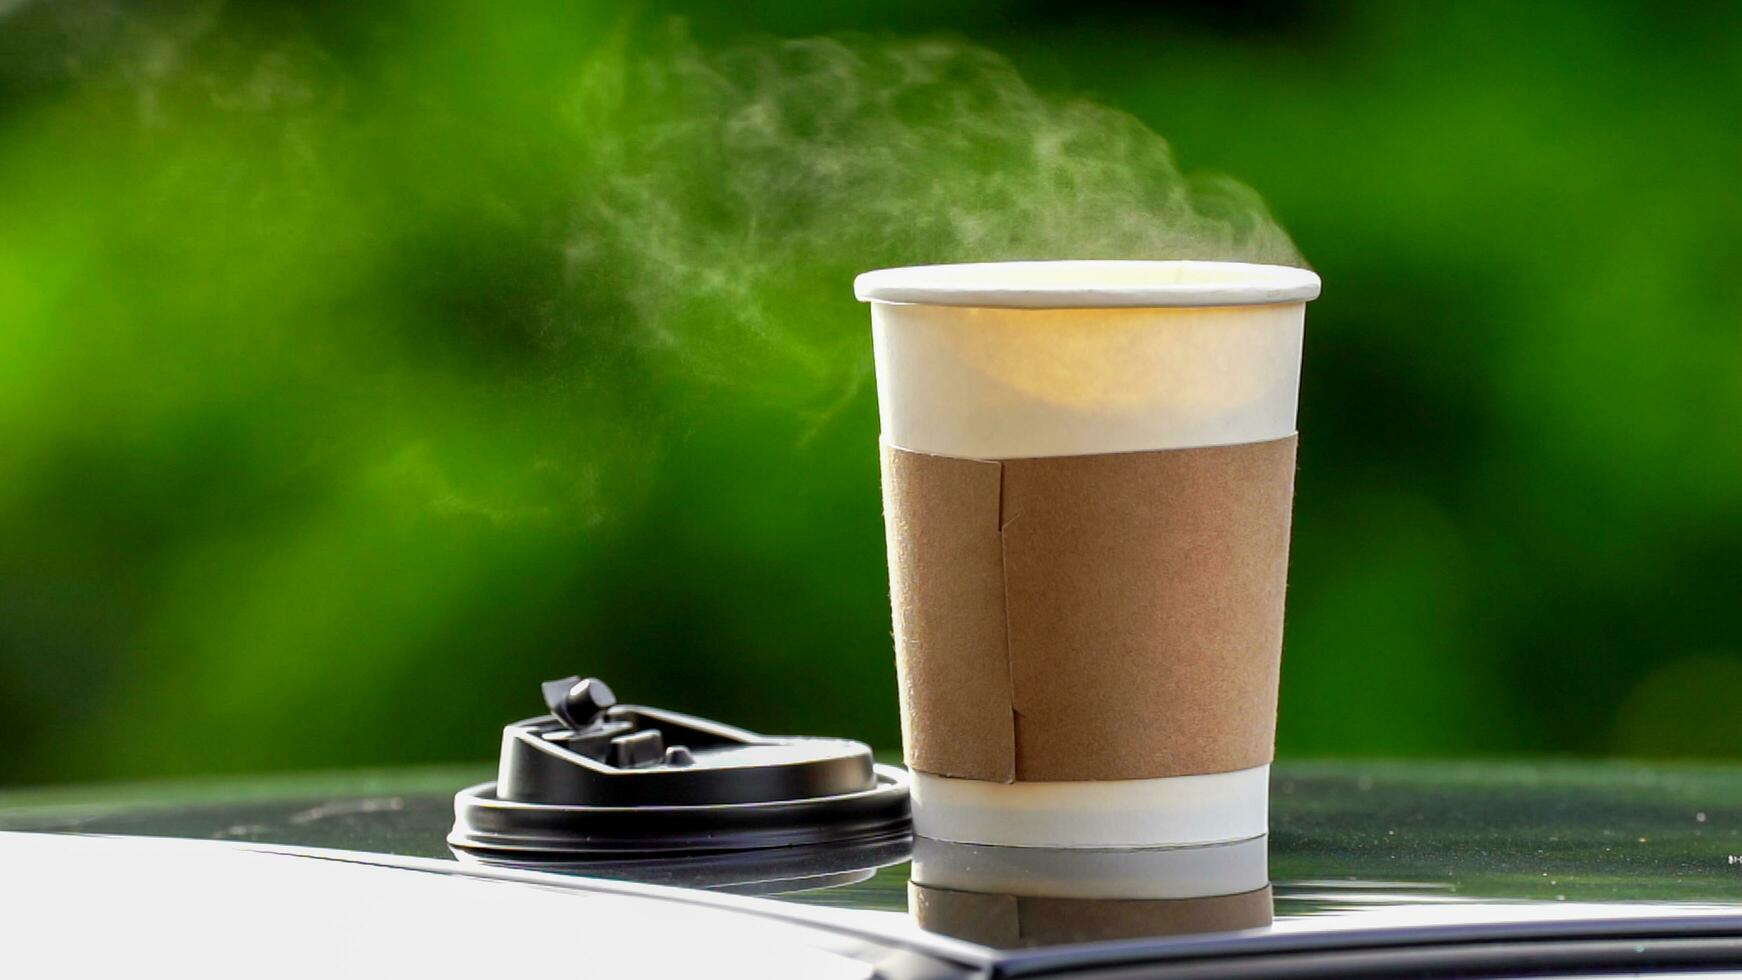 kaffe hämtmat i en papper kopp på topp av de bil tak grön träd bakgrund på soluppgång i de morgon, selektiv fokus, mjuk fokus. foto